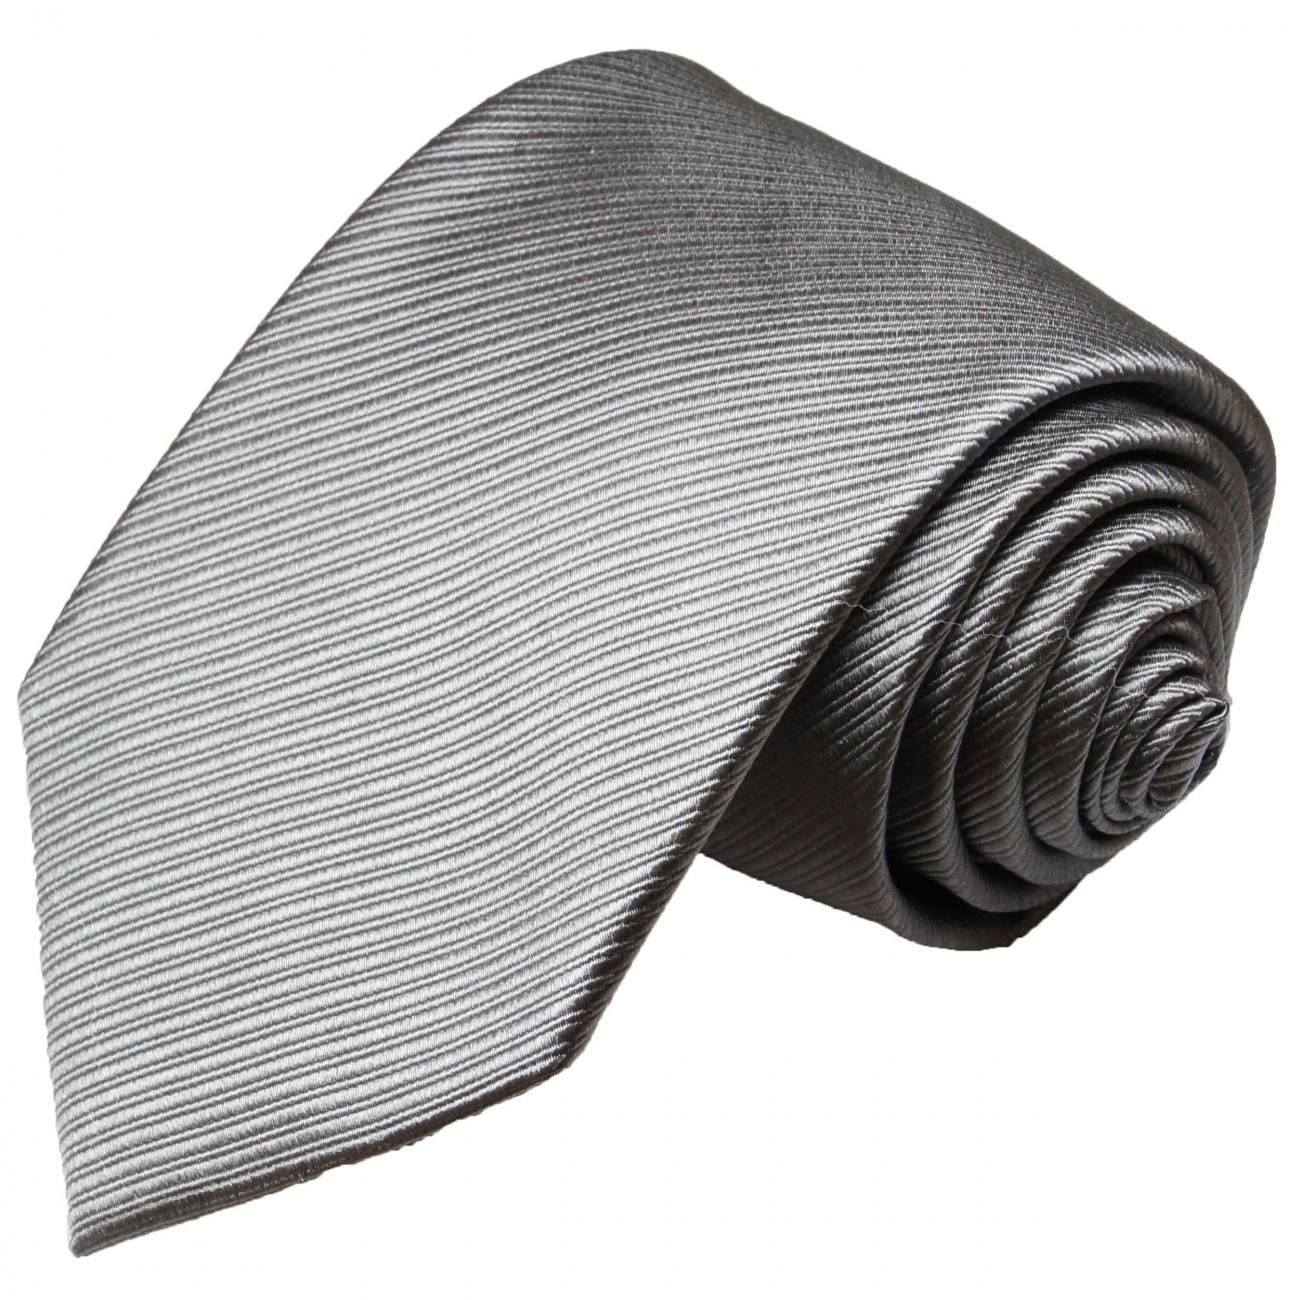 Krawatte silber grau uni Seide